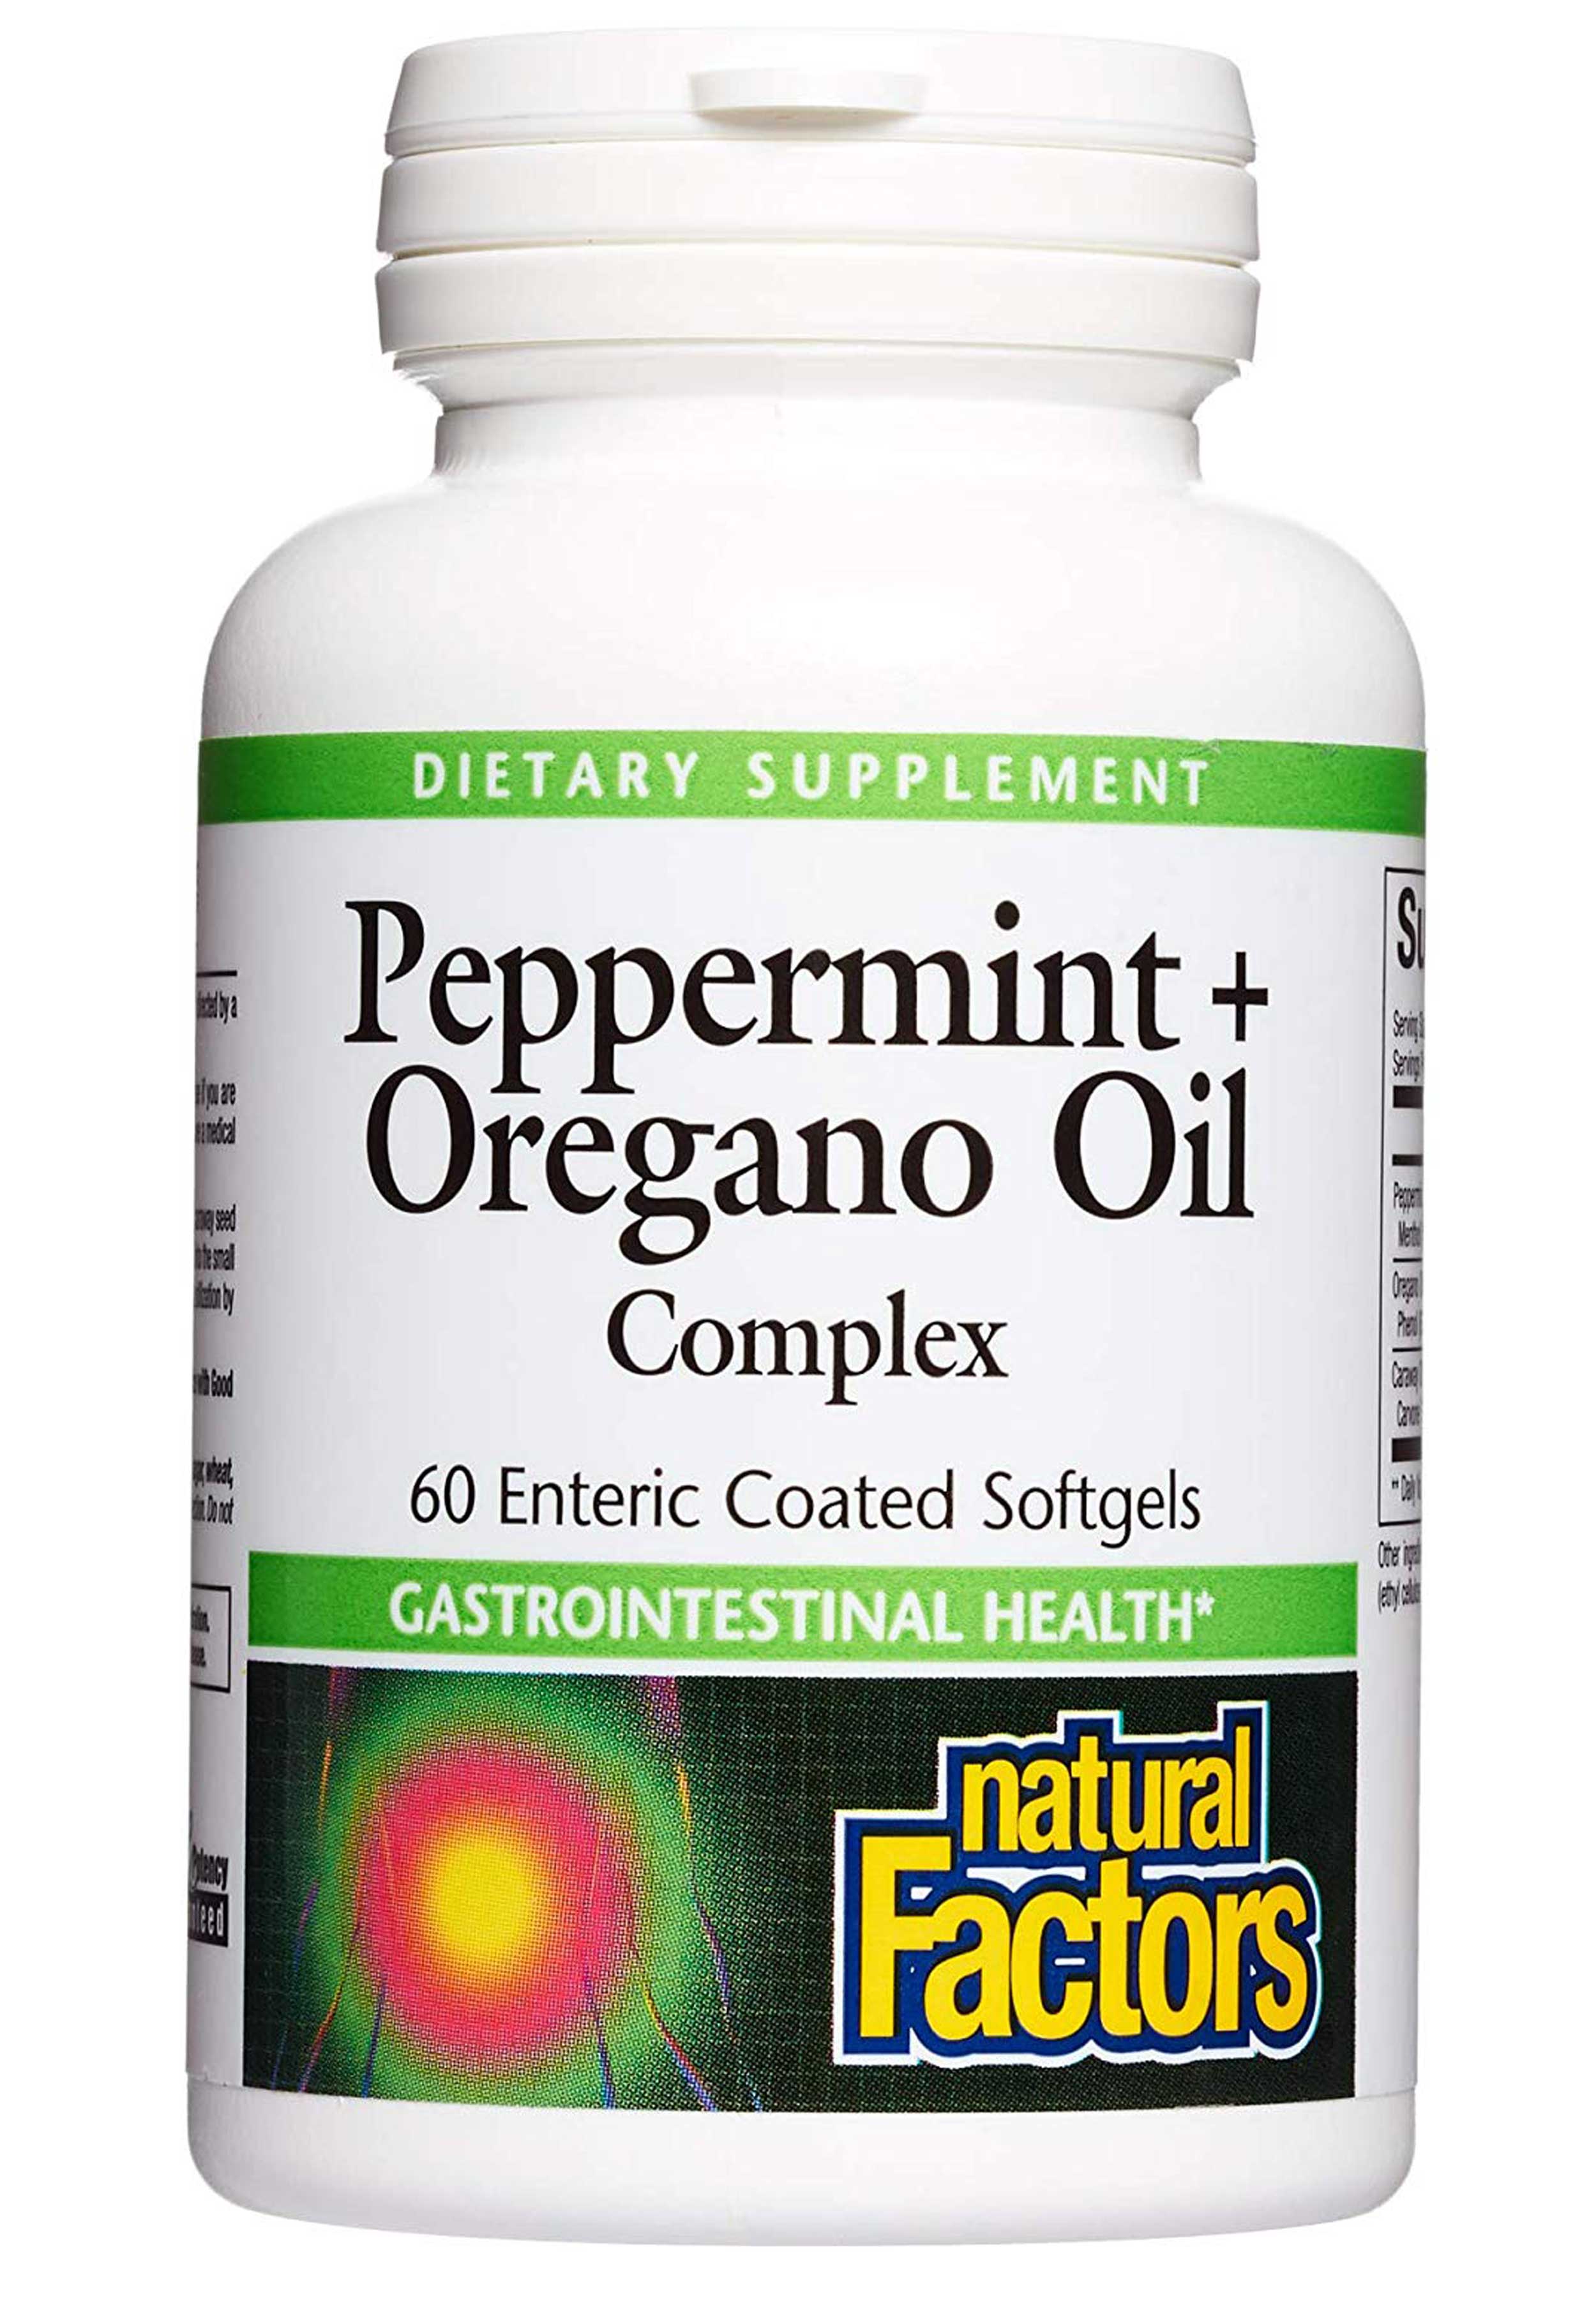 Natural Factors Peppermint & Oregano Oil